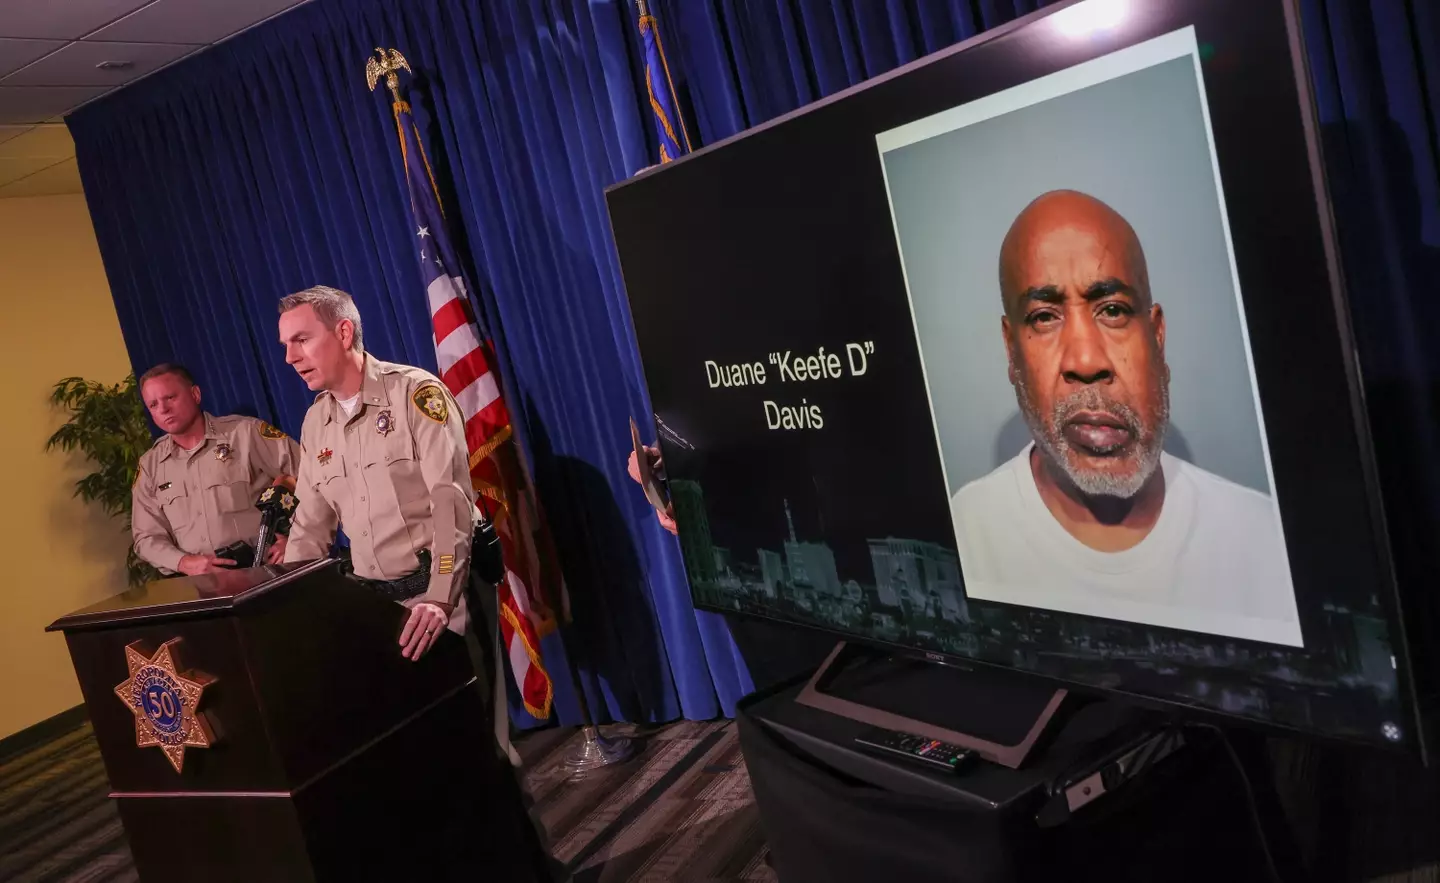 Davis was arrested last week.